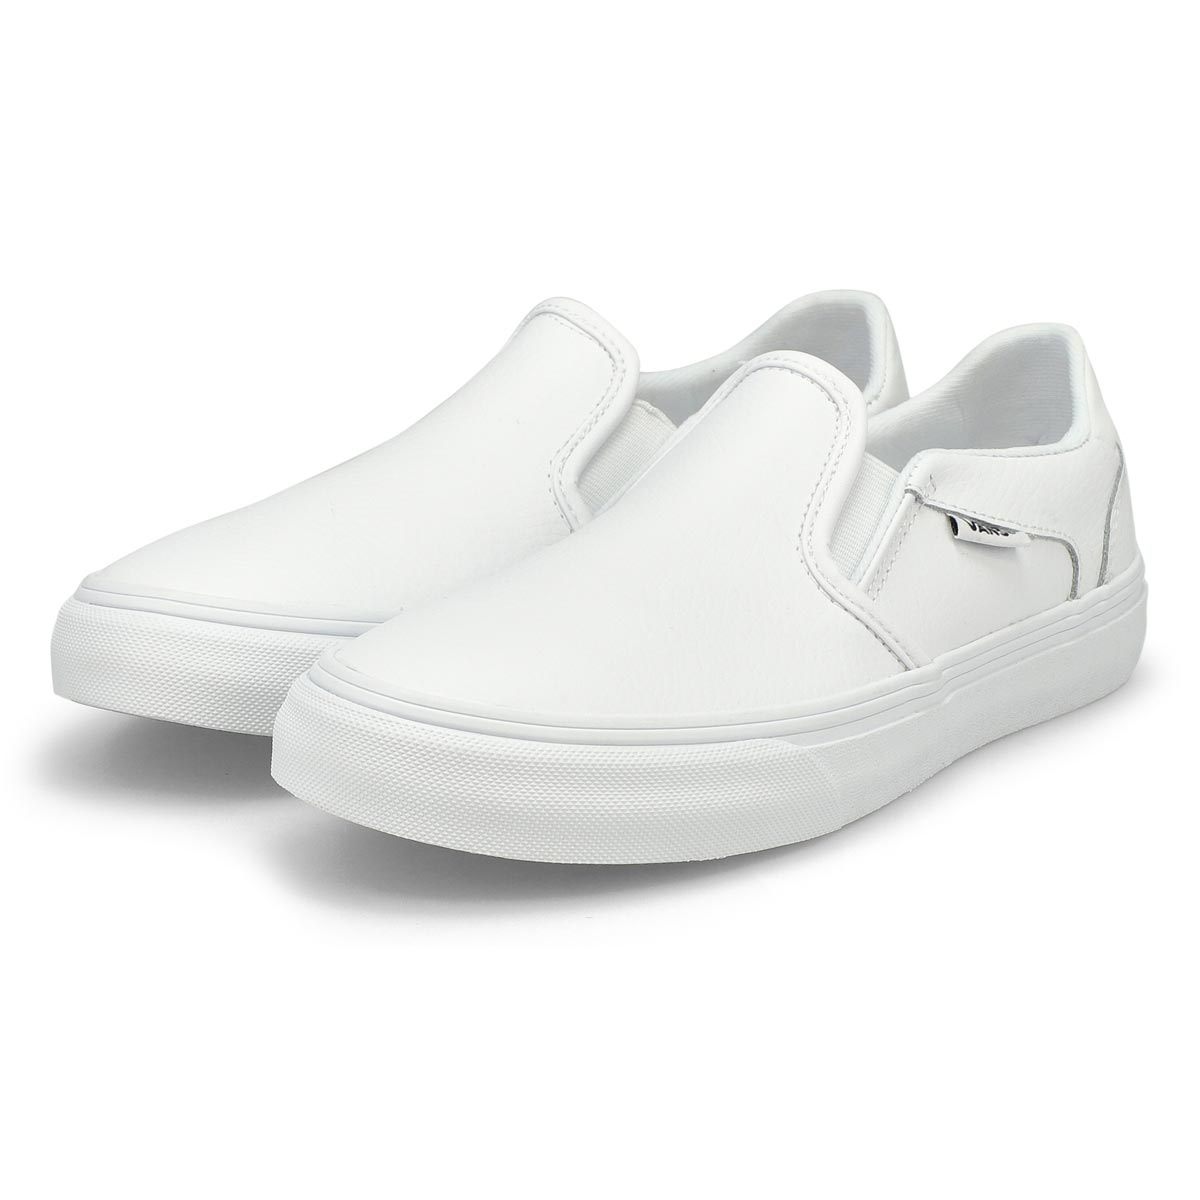 Women's Asher Deluxe Slip On Sneaker - White/White